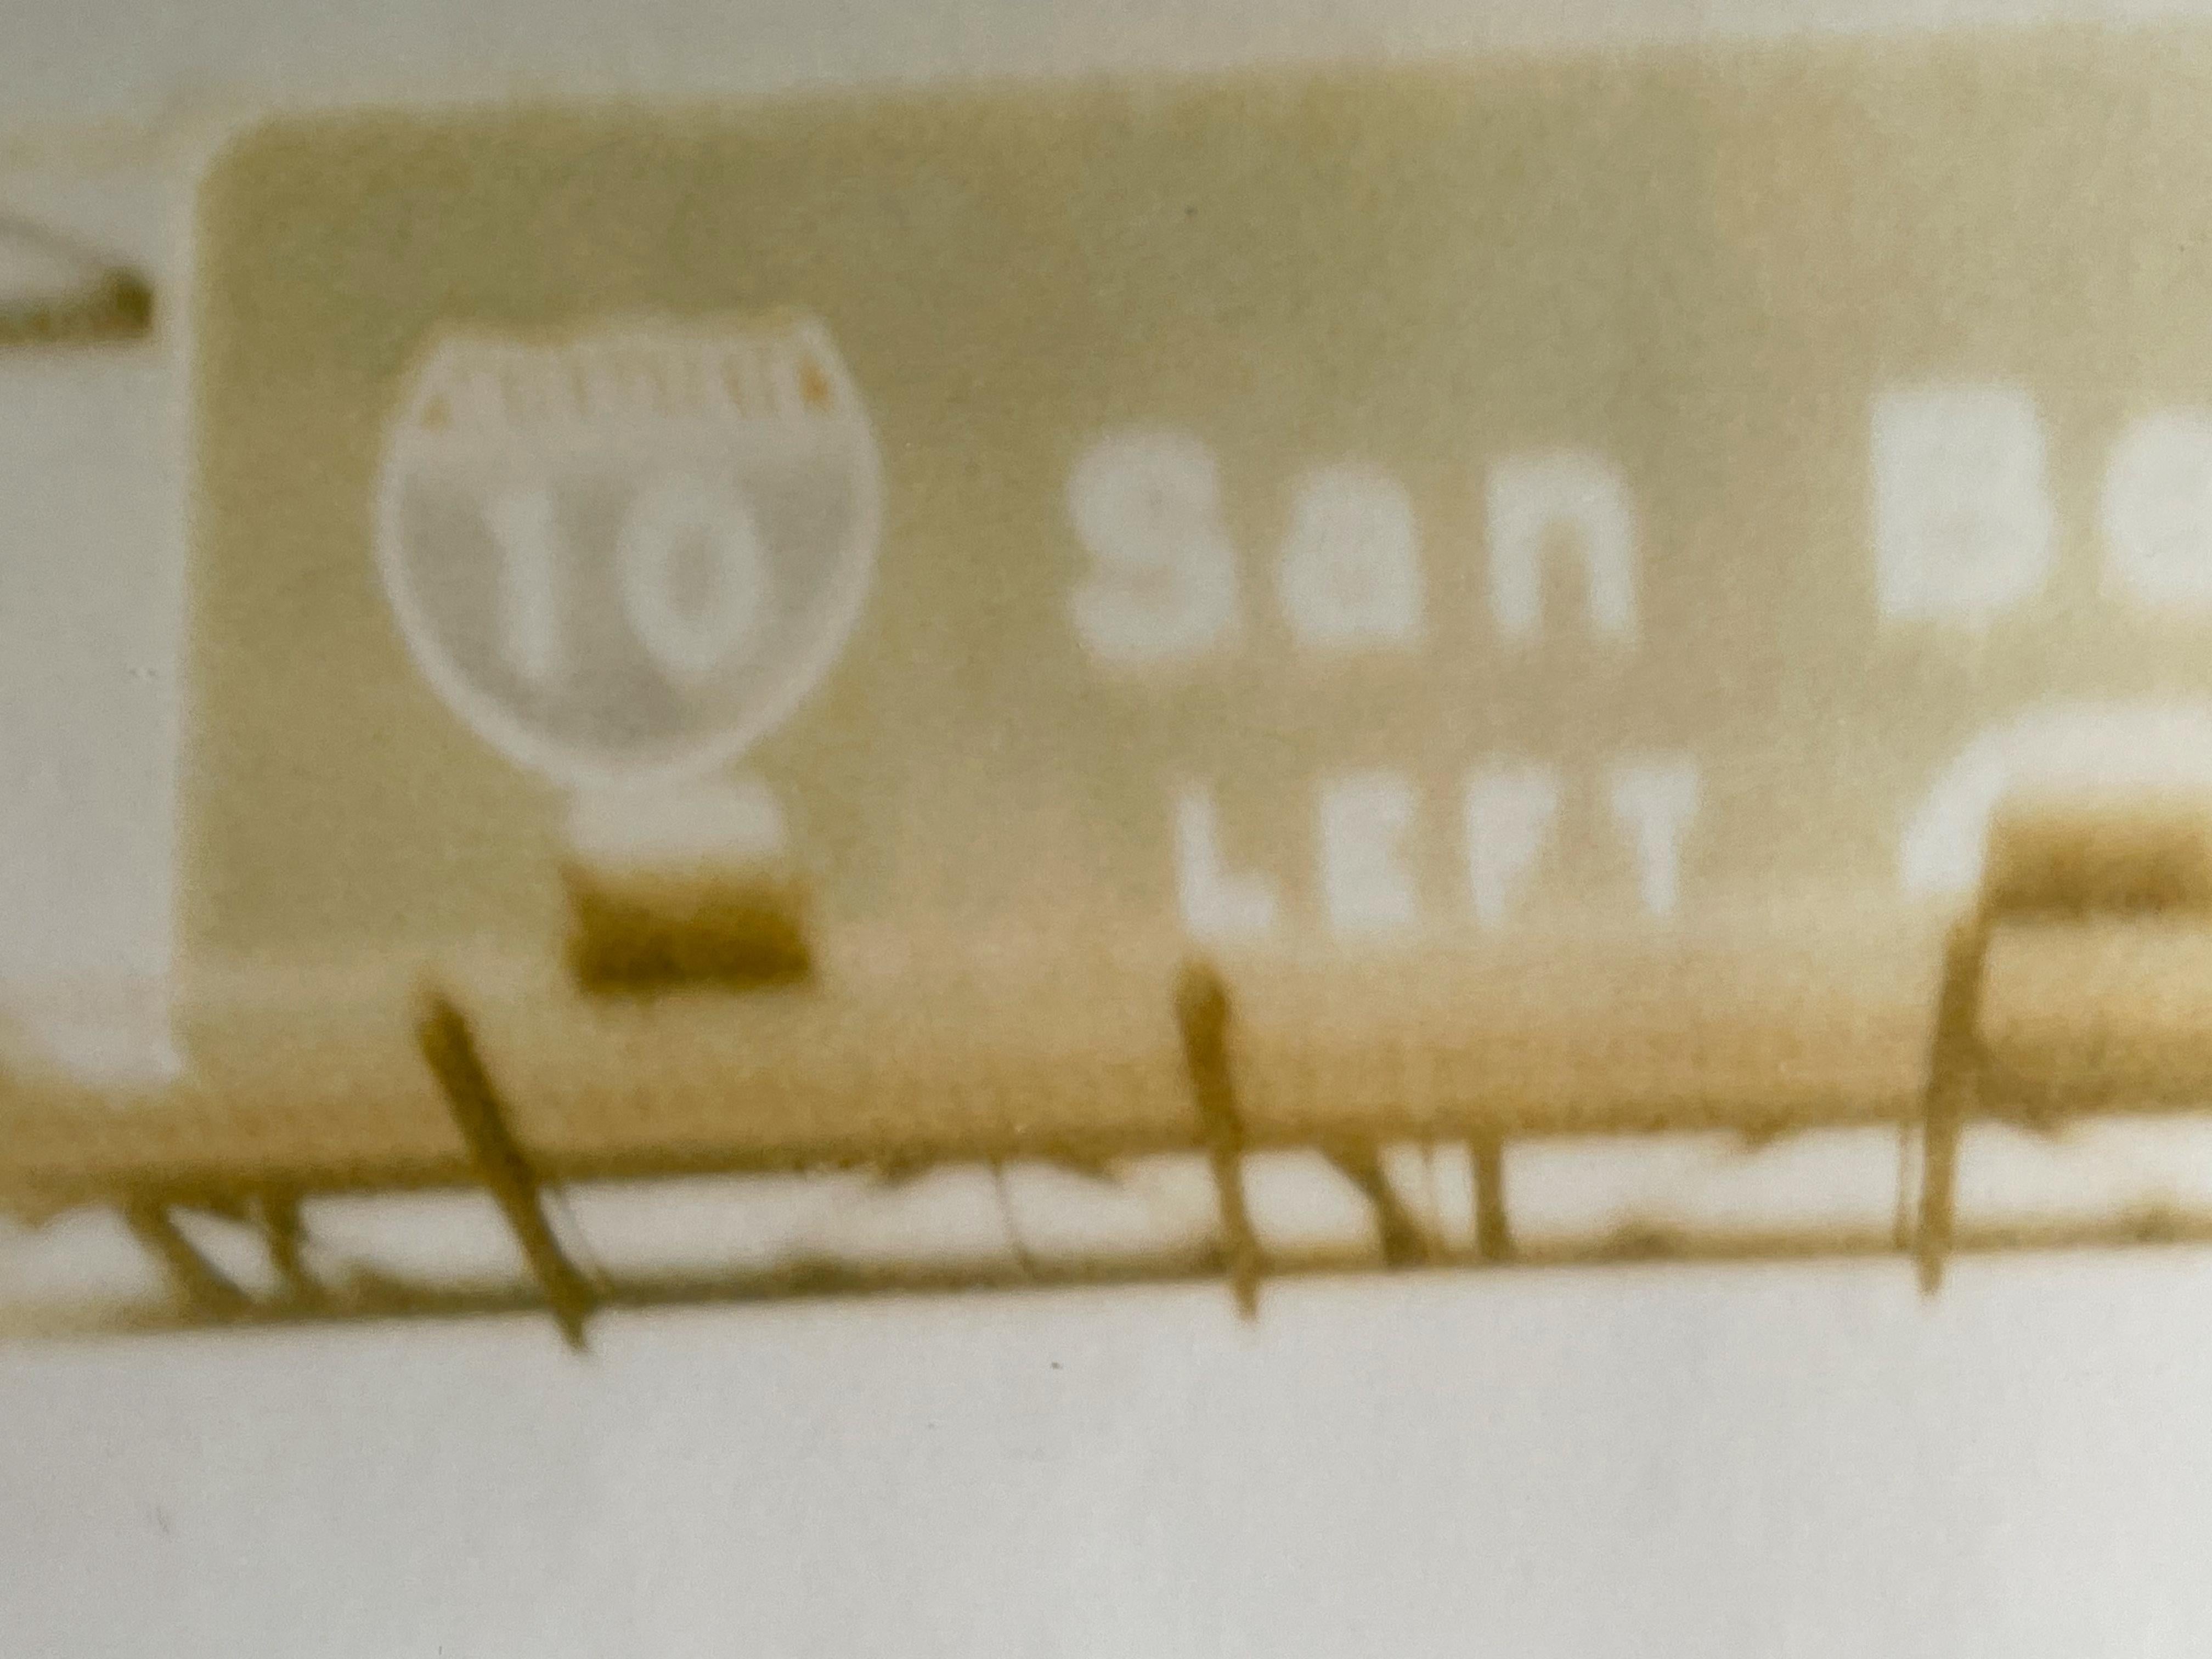 San Bernadino (Fahrt in die Wüste) - 1999

44x59cm, 
Auflage: 10 Exemplare plus 2 Probedrucke. 
Analoger C-Print, von der Künstlerin handgedruckt, basierend auf dem Original-Polaroid. 
Verso signiert mit Zertifikat. 
Künstler-Inventar #228. 
Nicht